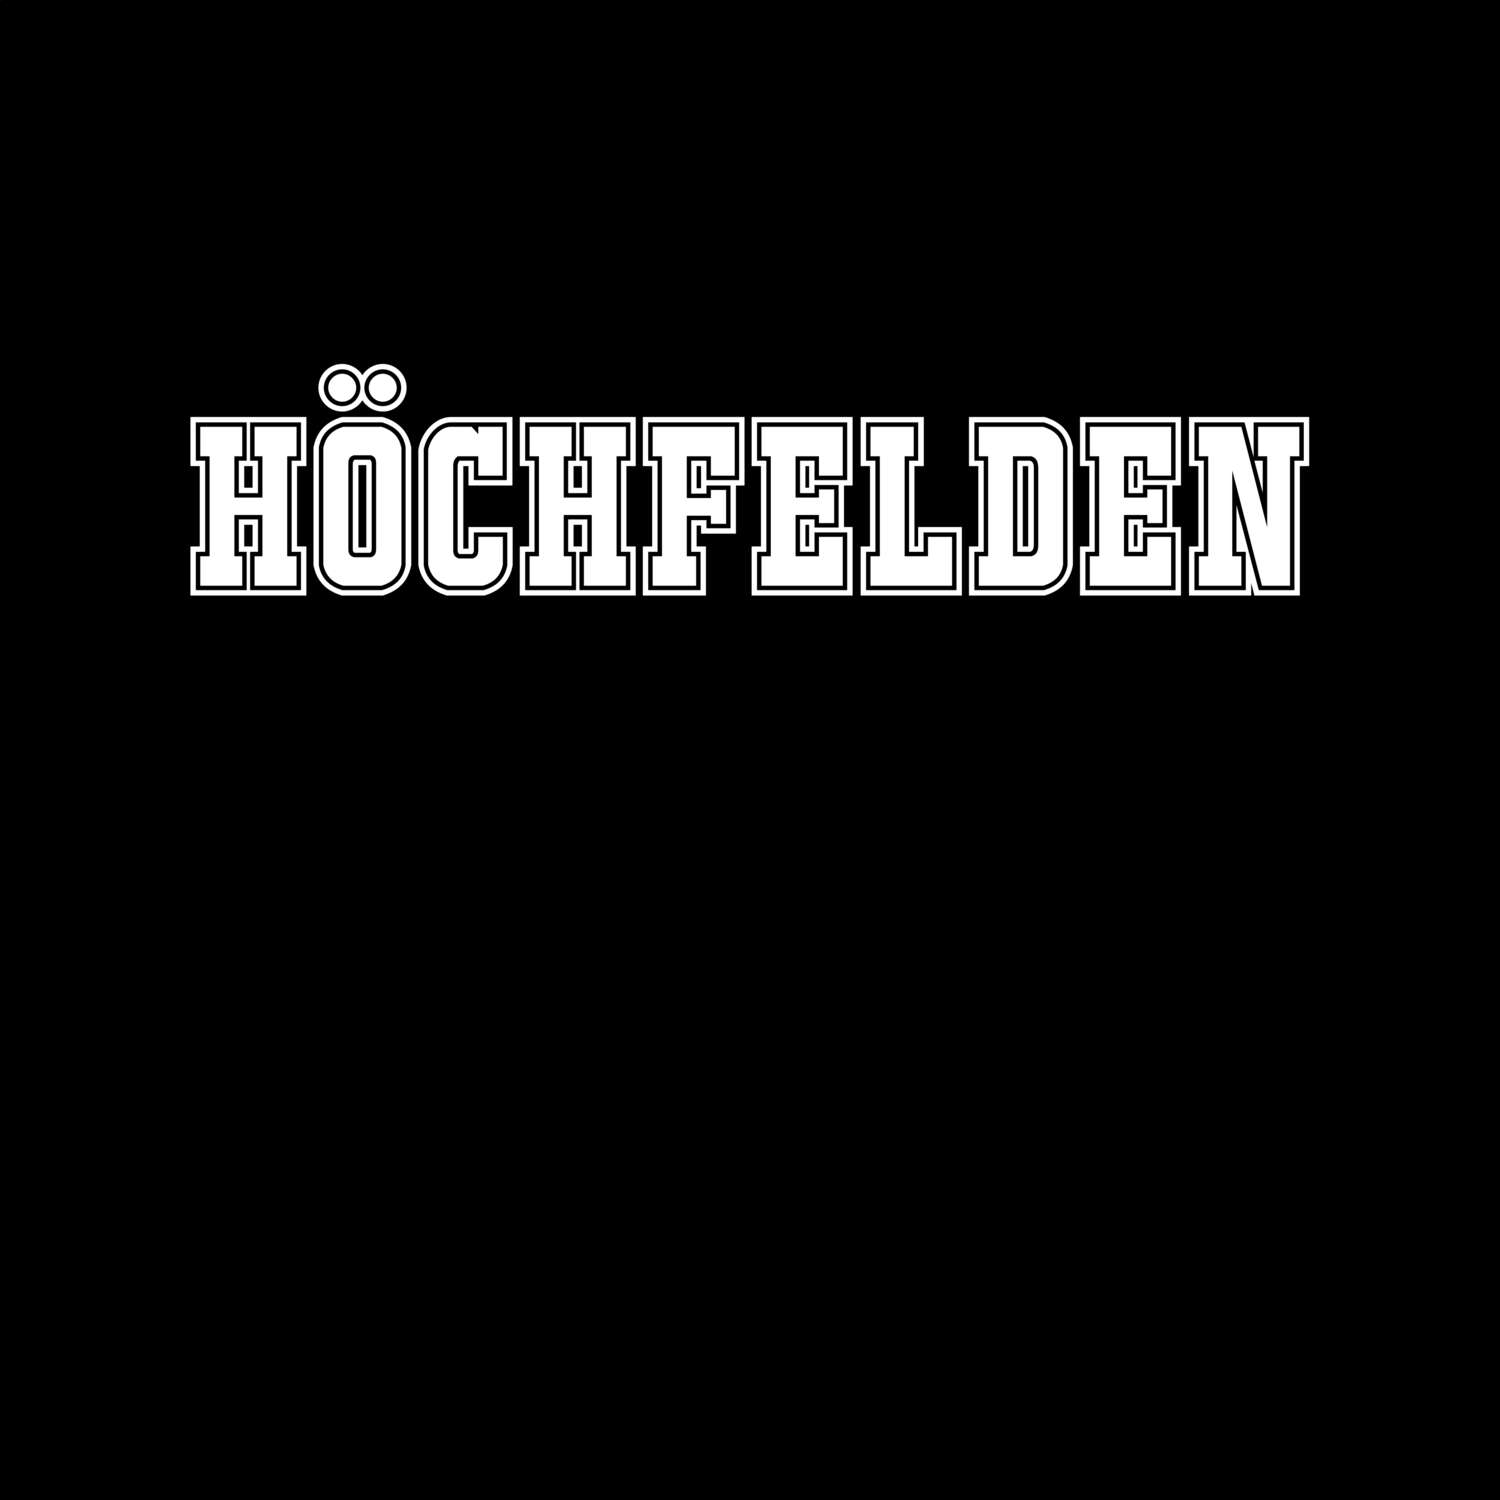 Höchfelden T-Shirt »Classic«